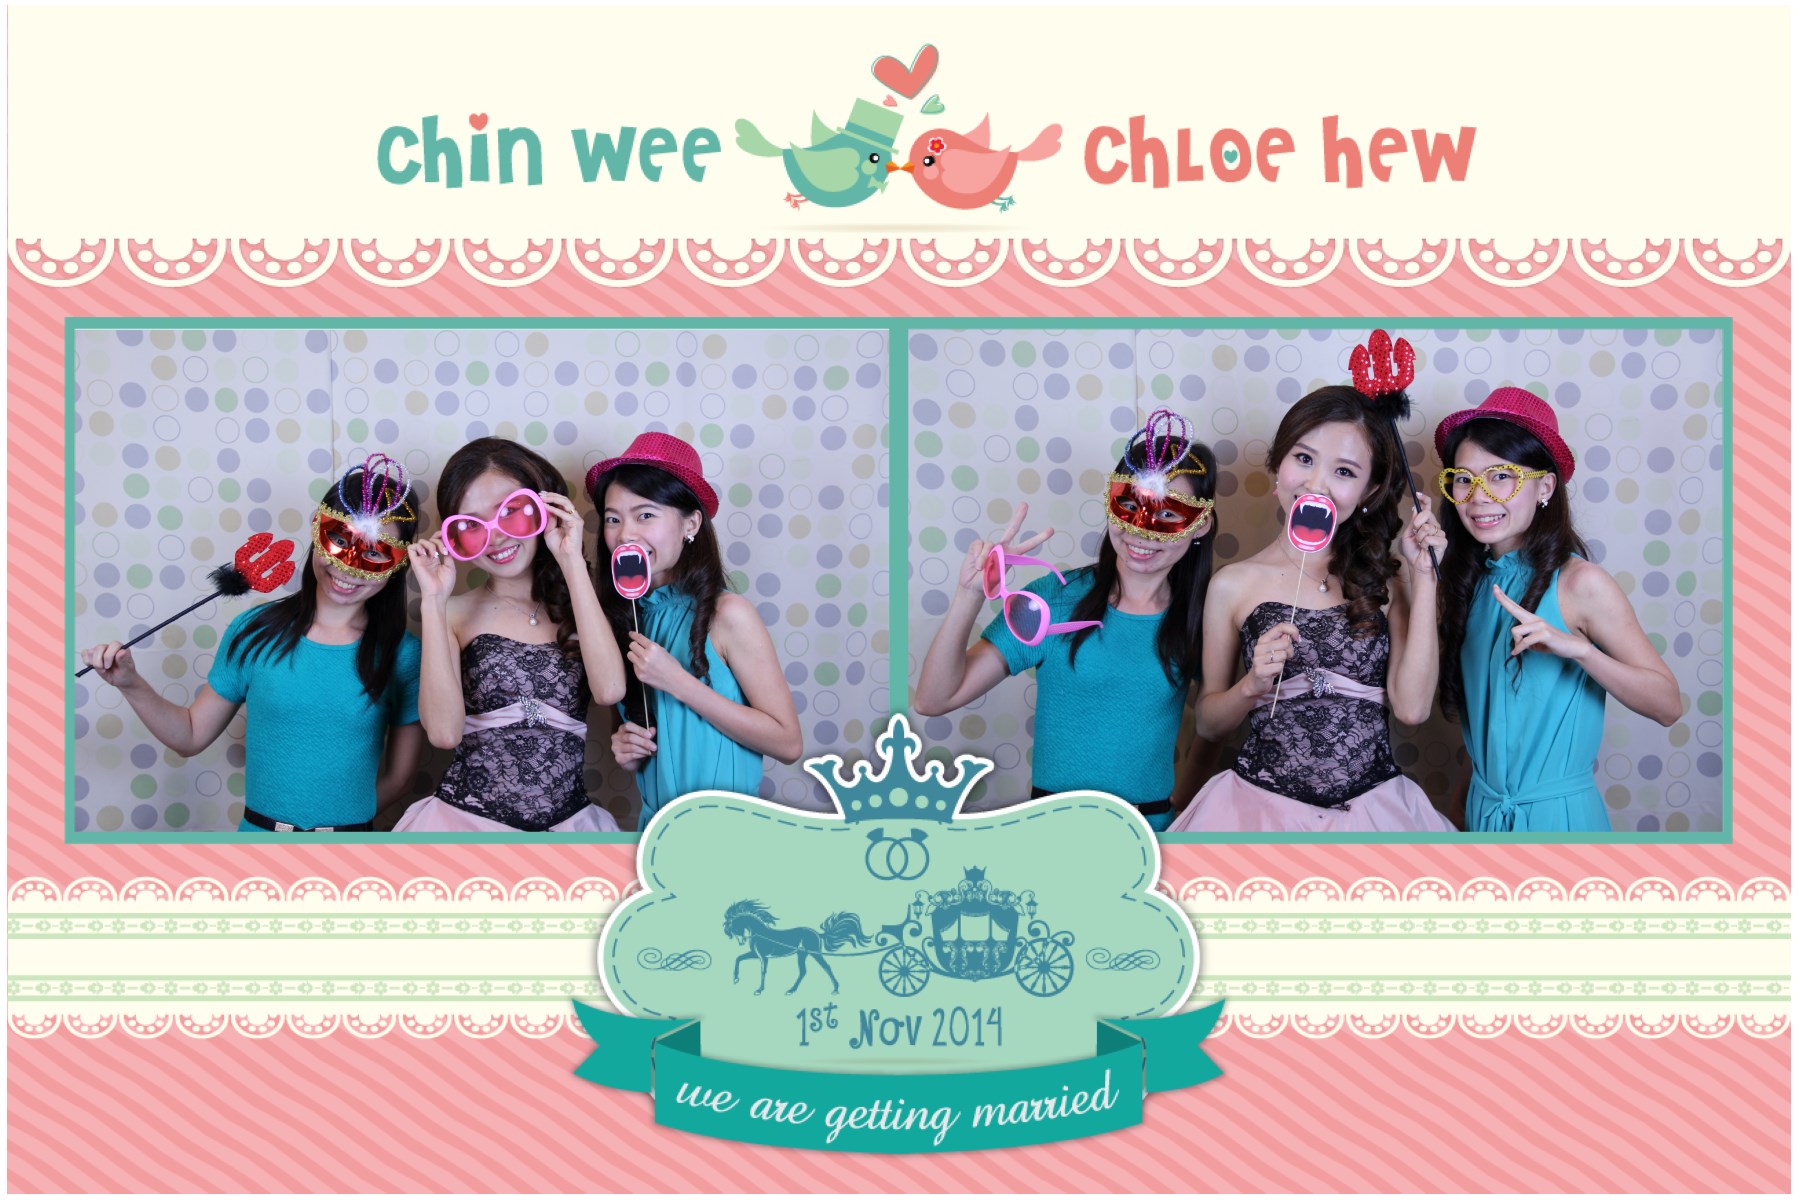 Chin Wee & Chloe